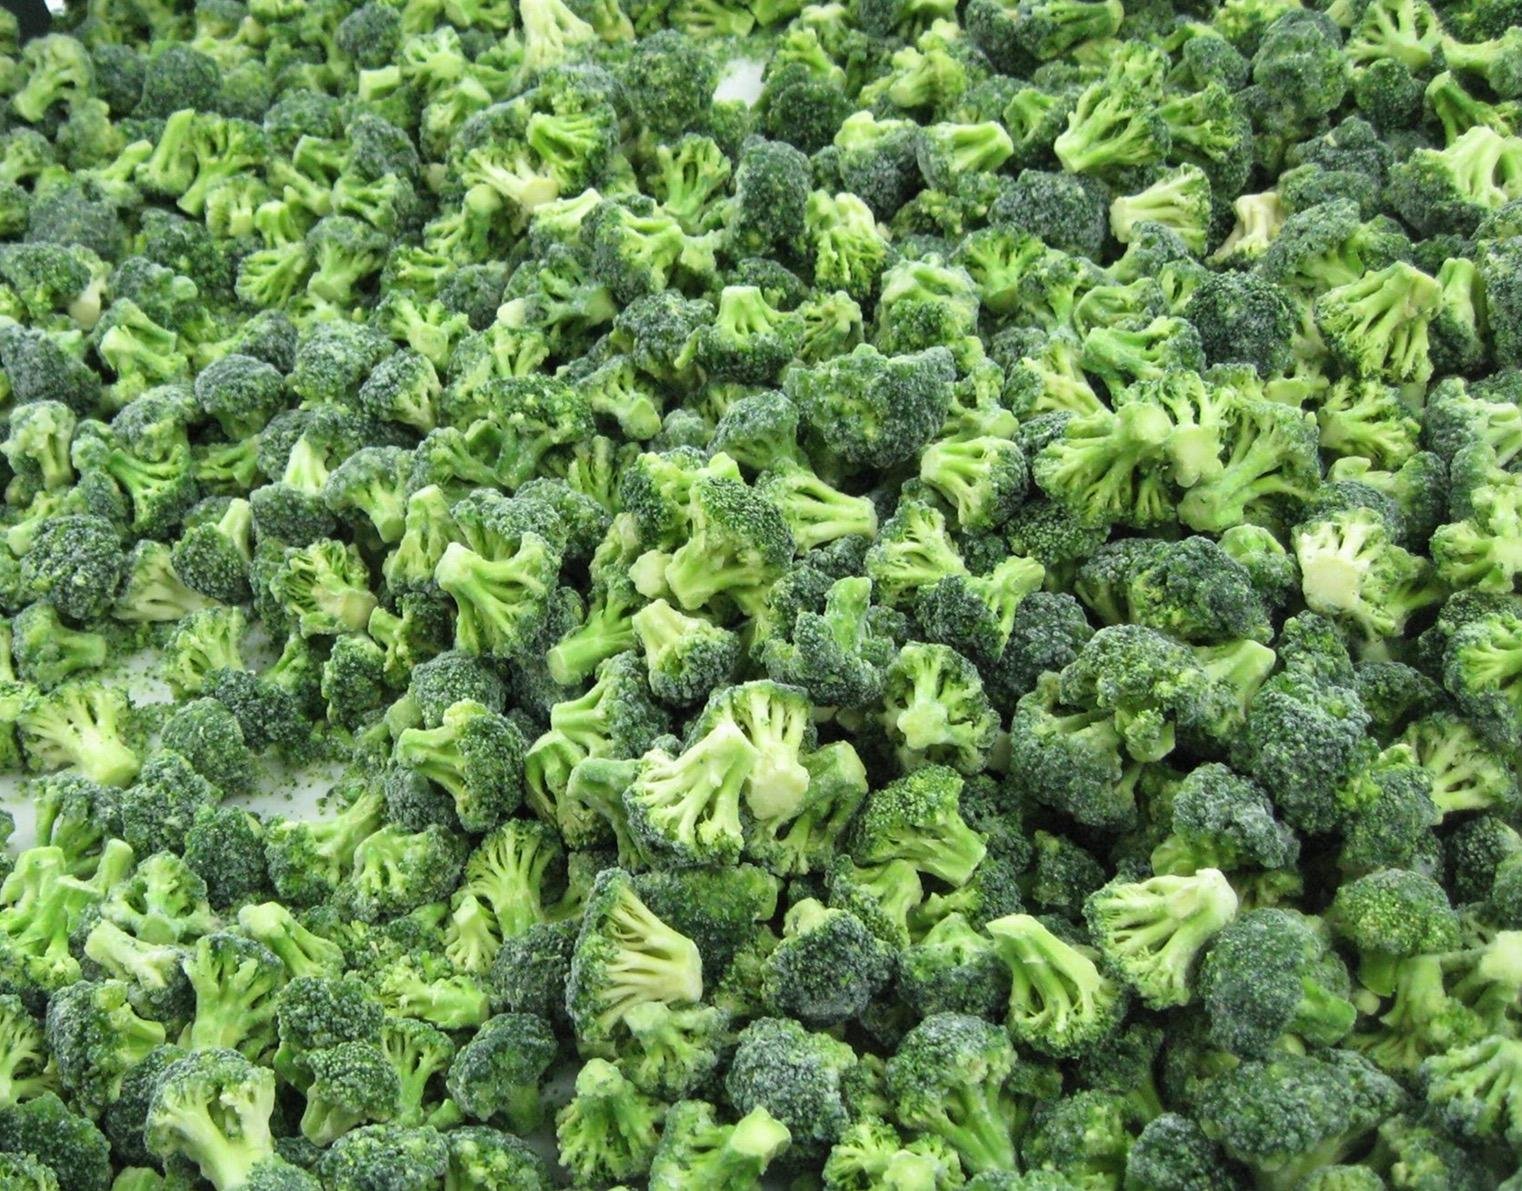 IQF Broccoli Florets,Frozen Broccoli Florets,IQF Frozen Broccoli Cuts 3